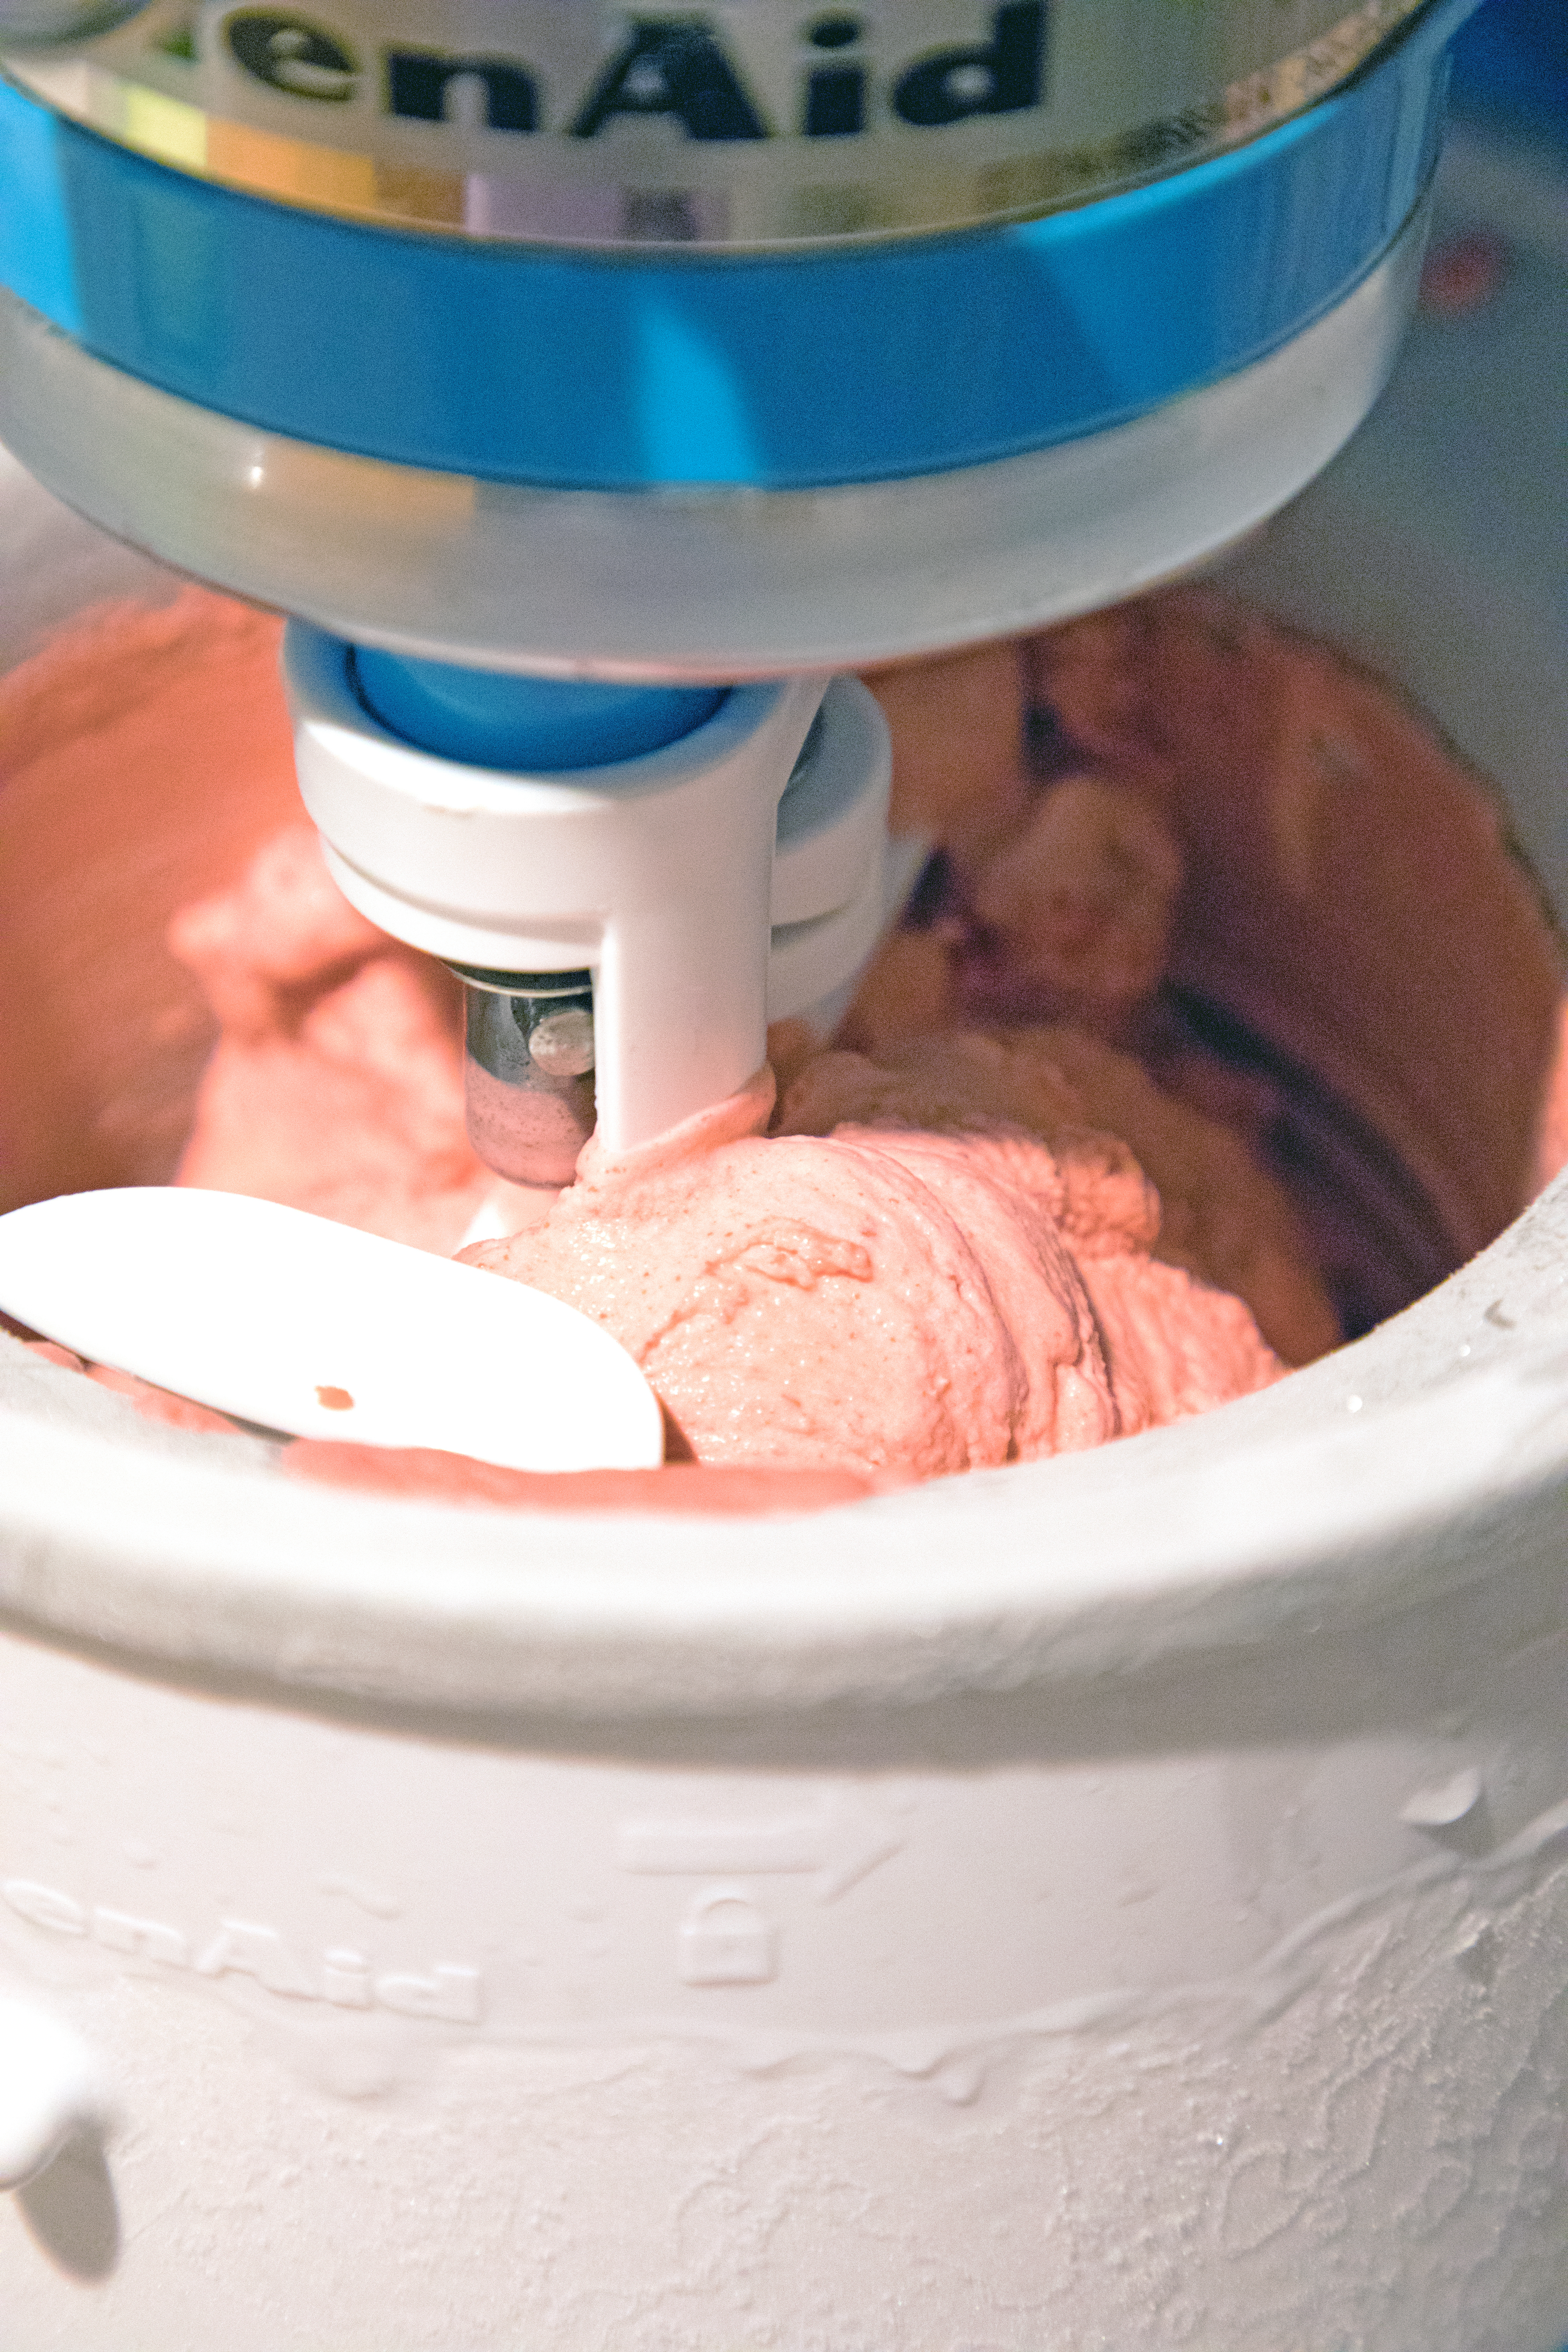 Red velvet ice cream churning in ice cream maker bowl.